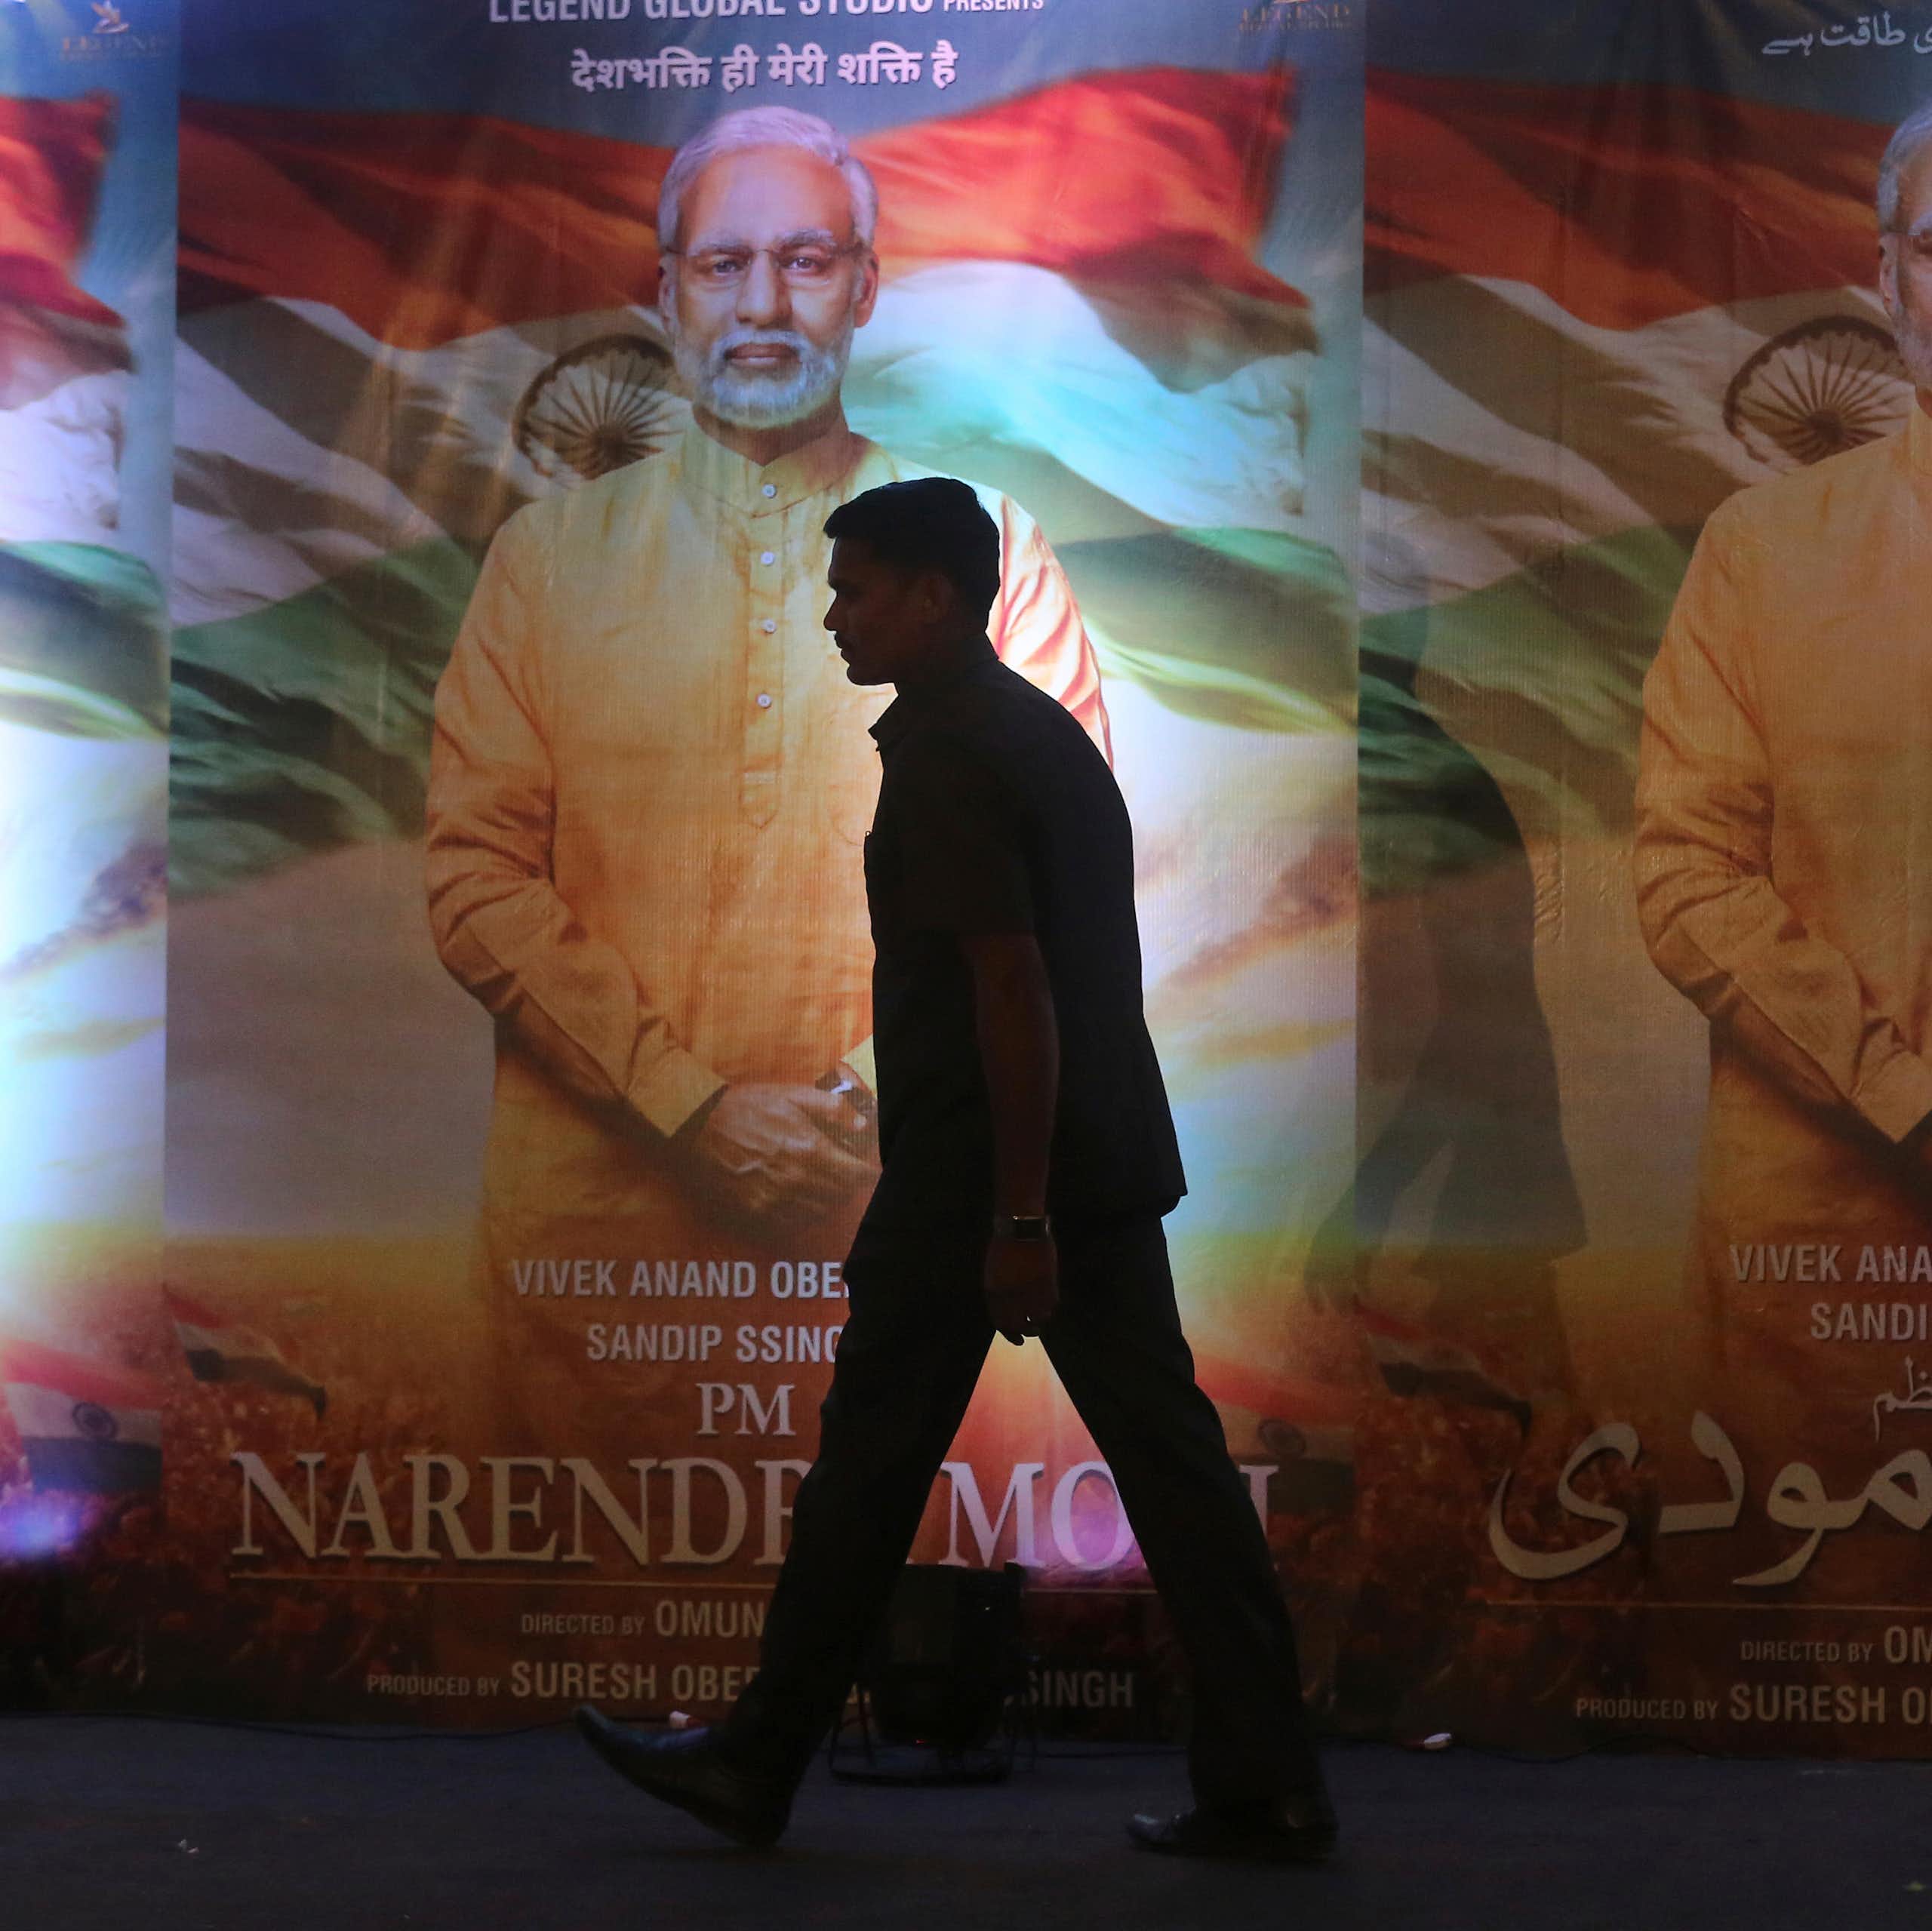 Silhouette d'un homme passant devant trois affiches identiques représentant un homme aux cheveux gris, vêtu d'une longue chemise couleur safran, avec le drapeau de l'Inde en arrière-plan.